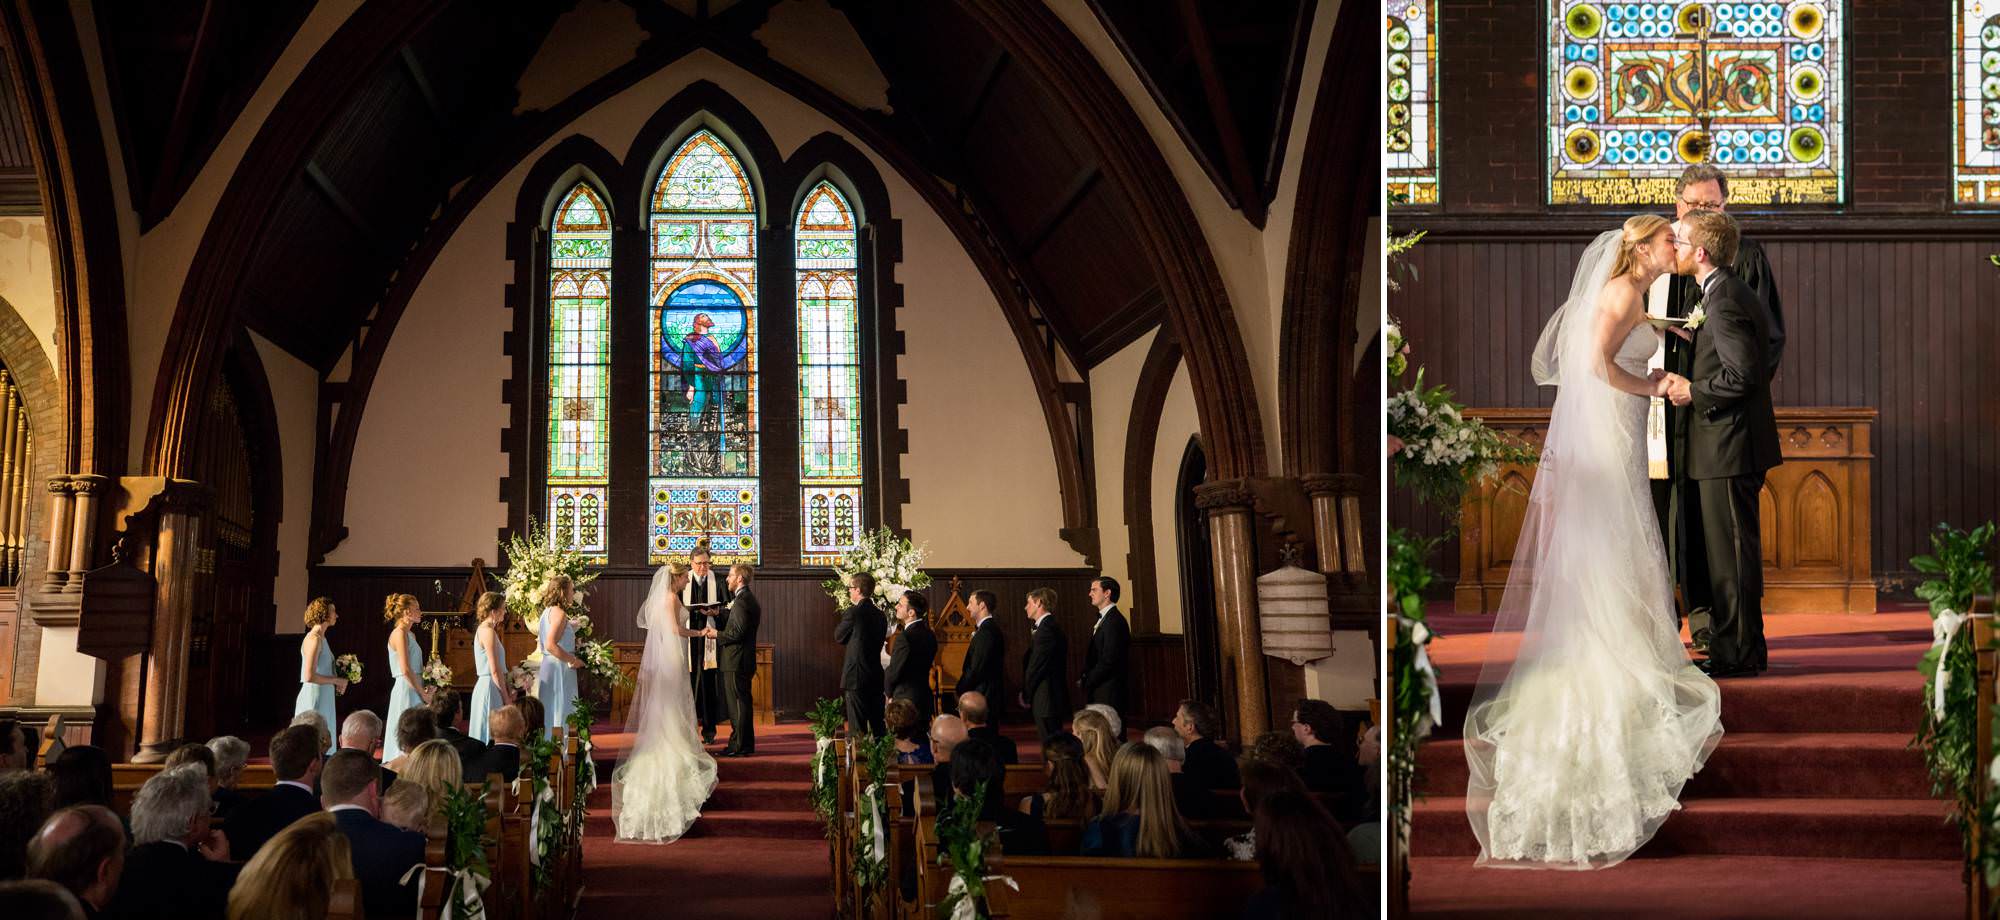 UVA Chapel Wedding Ceremony